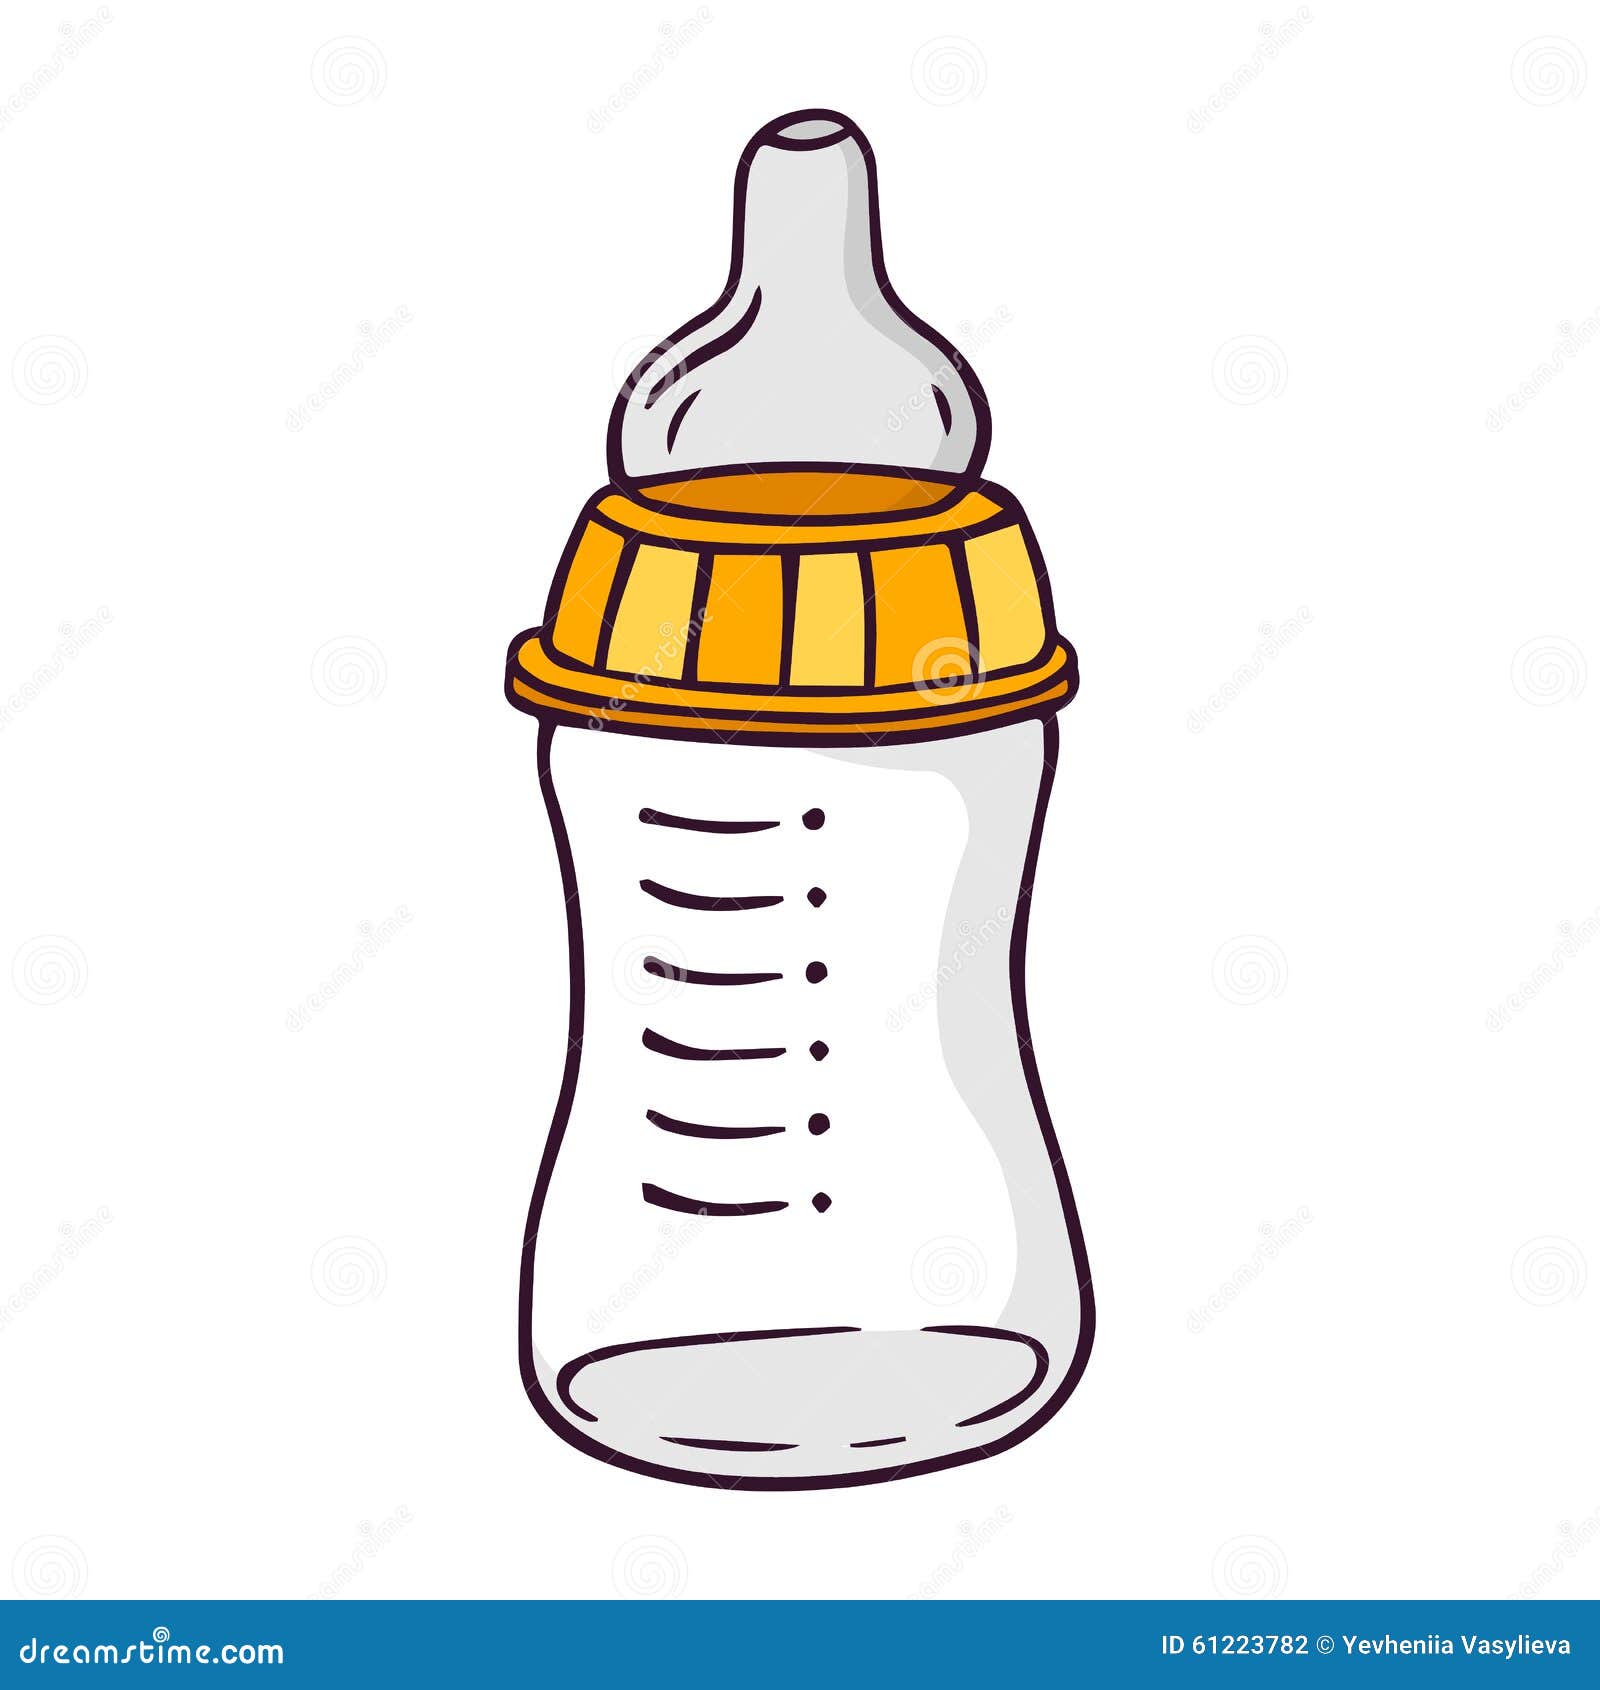 Feeding-bottle, Bright Vector Children Illustration Stock Vector